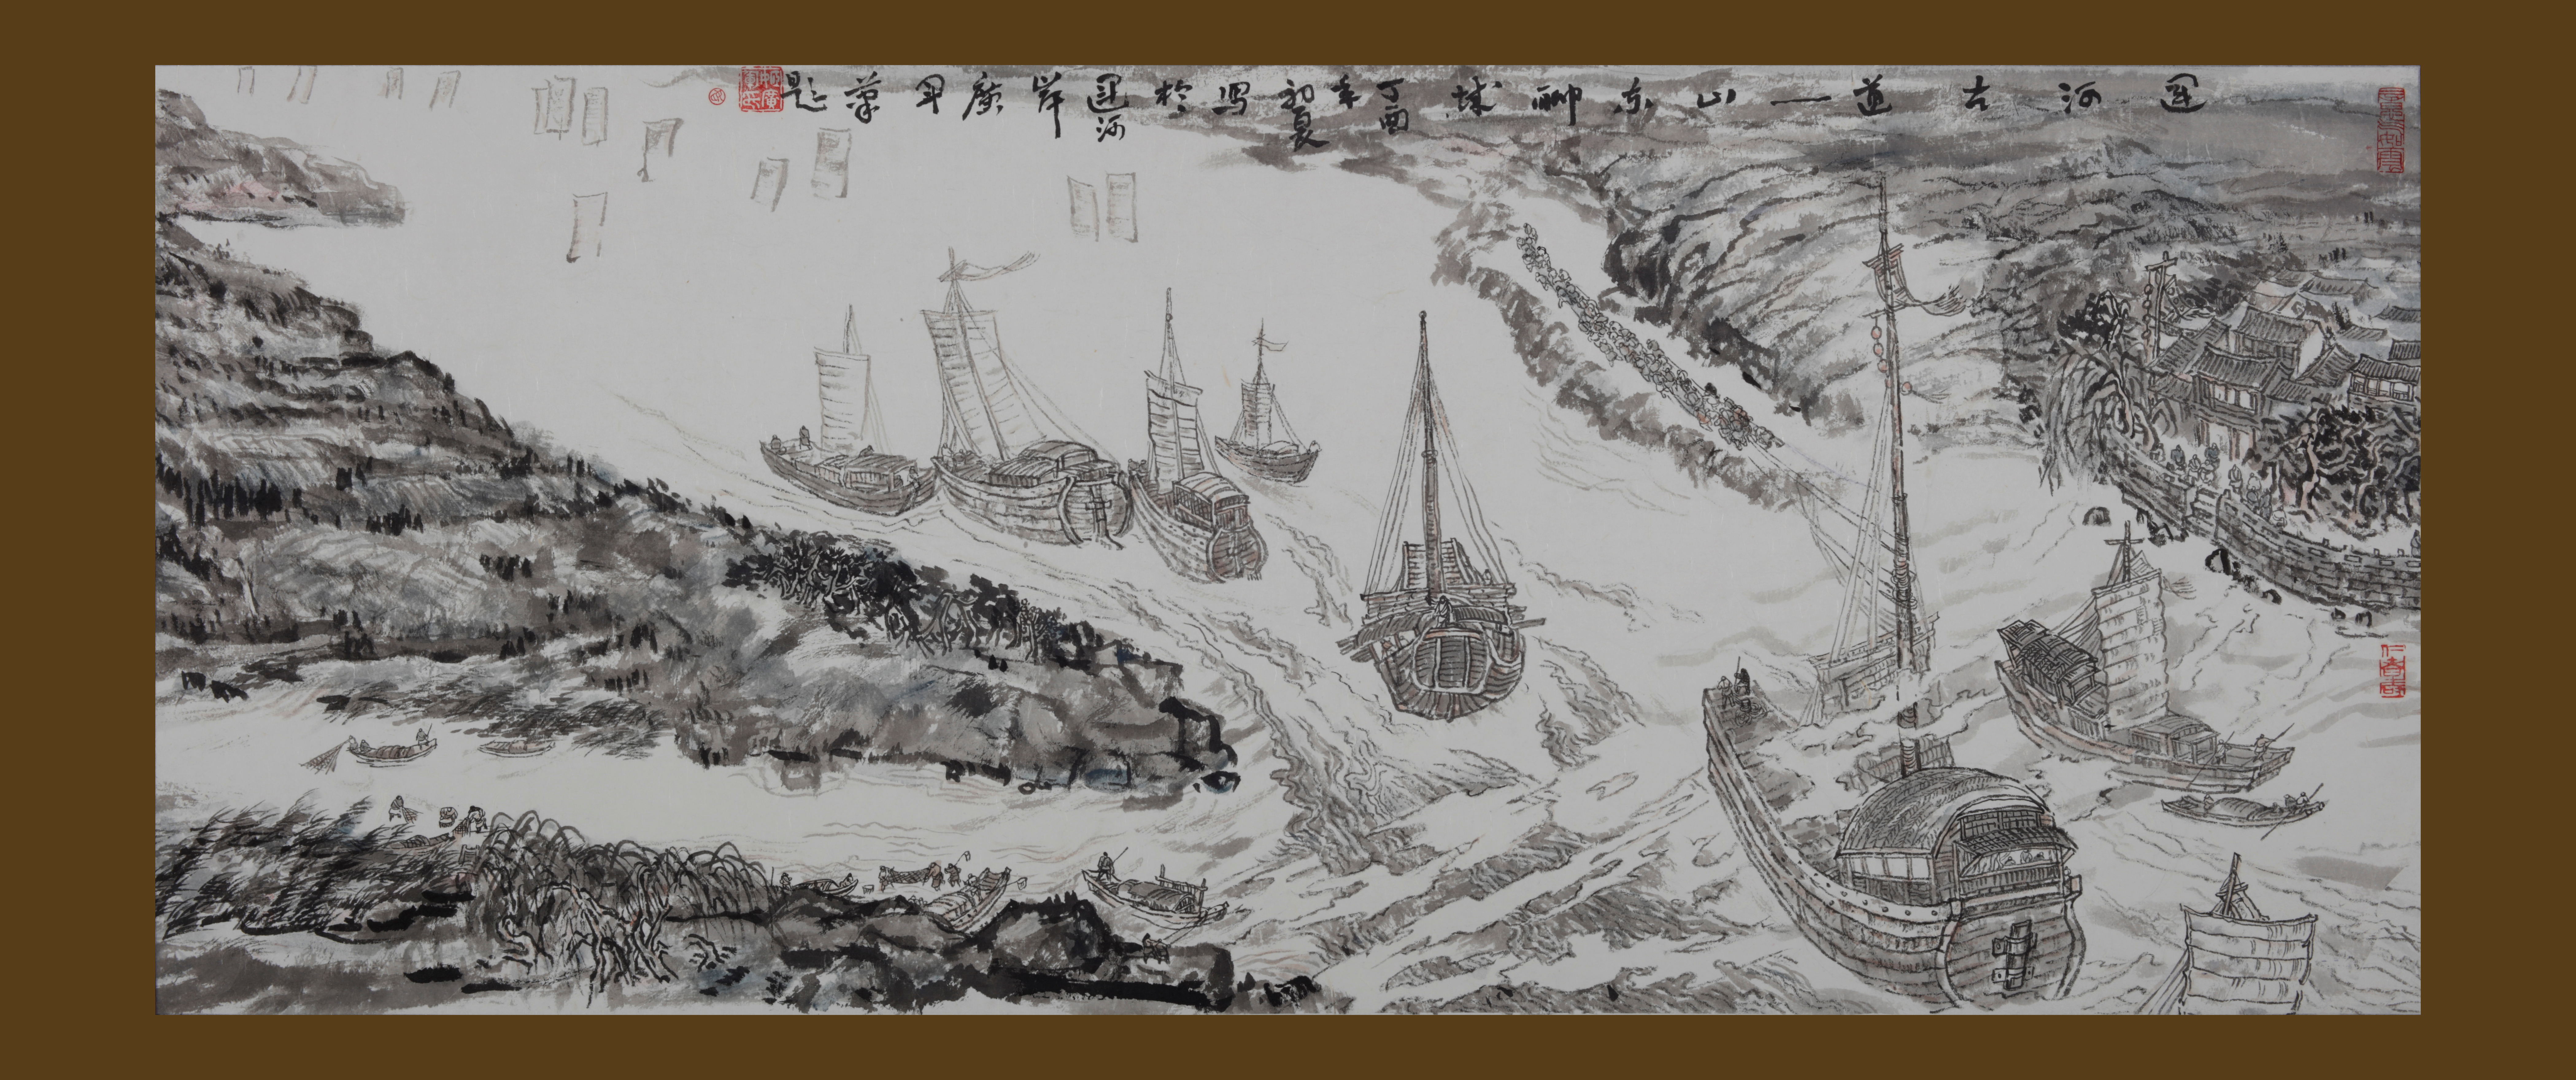 扬州运河工笔画图片